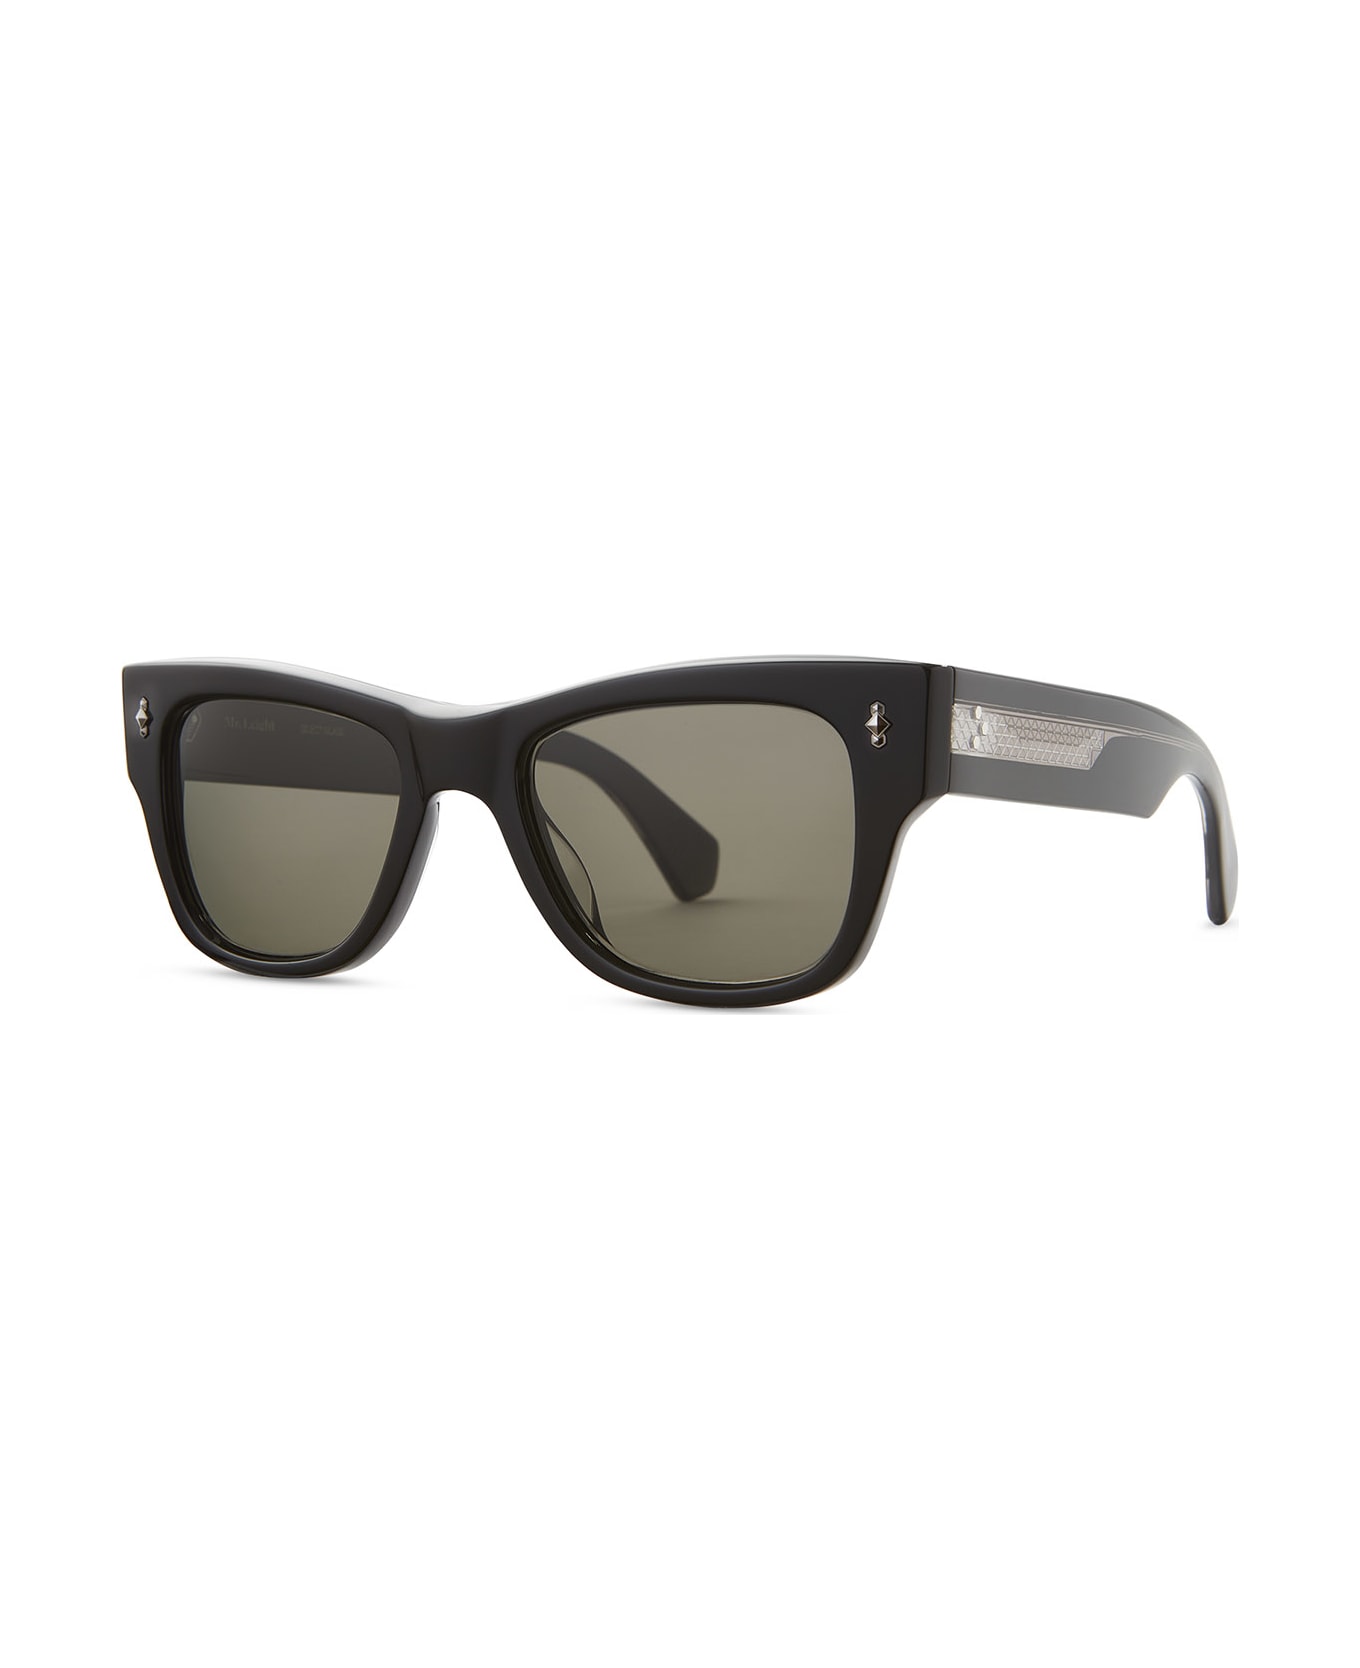 Mr. Leight Duke S Black-gunmetal Sunglasses -  Black-Gunmetal サングラス